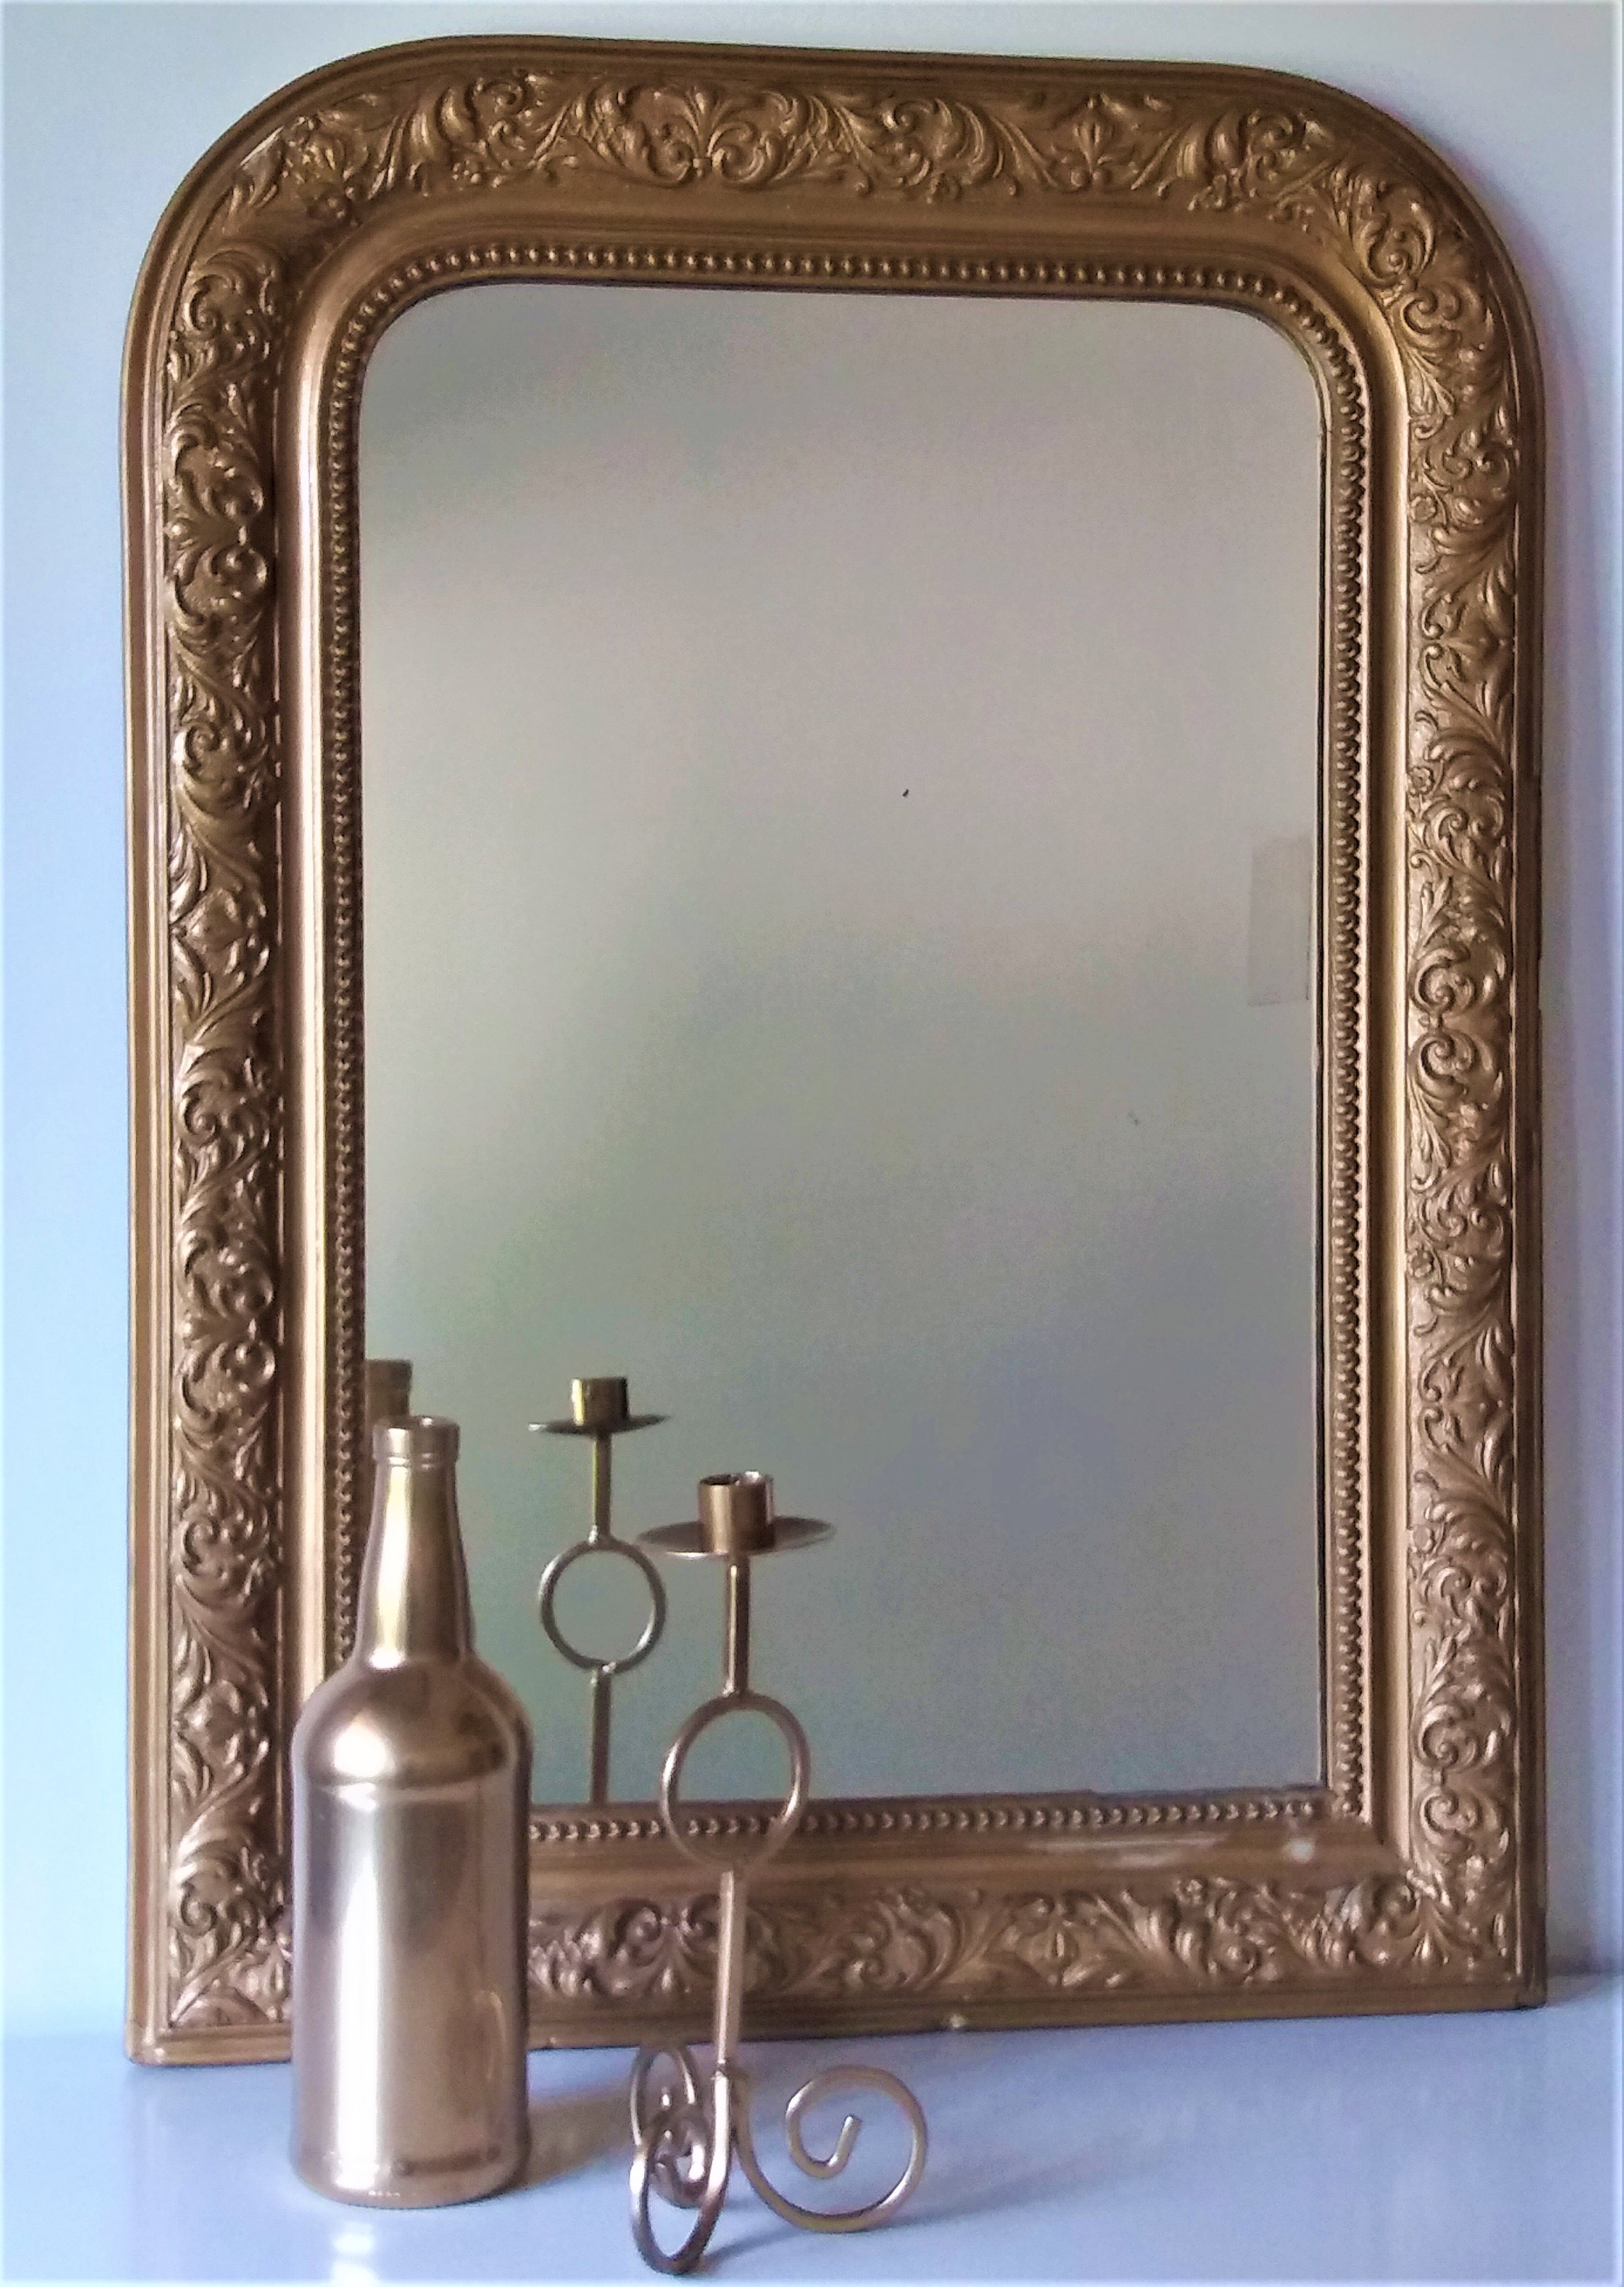 Miroir moulures or - Hauteur 77cm - Largeur 56cm